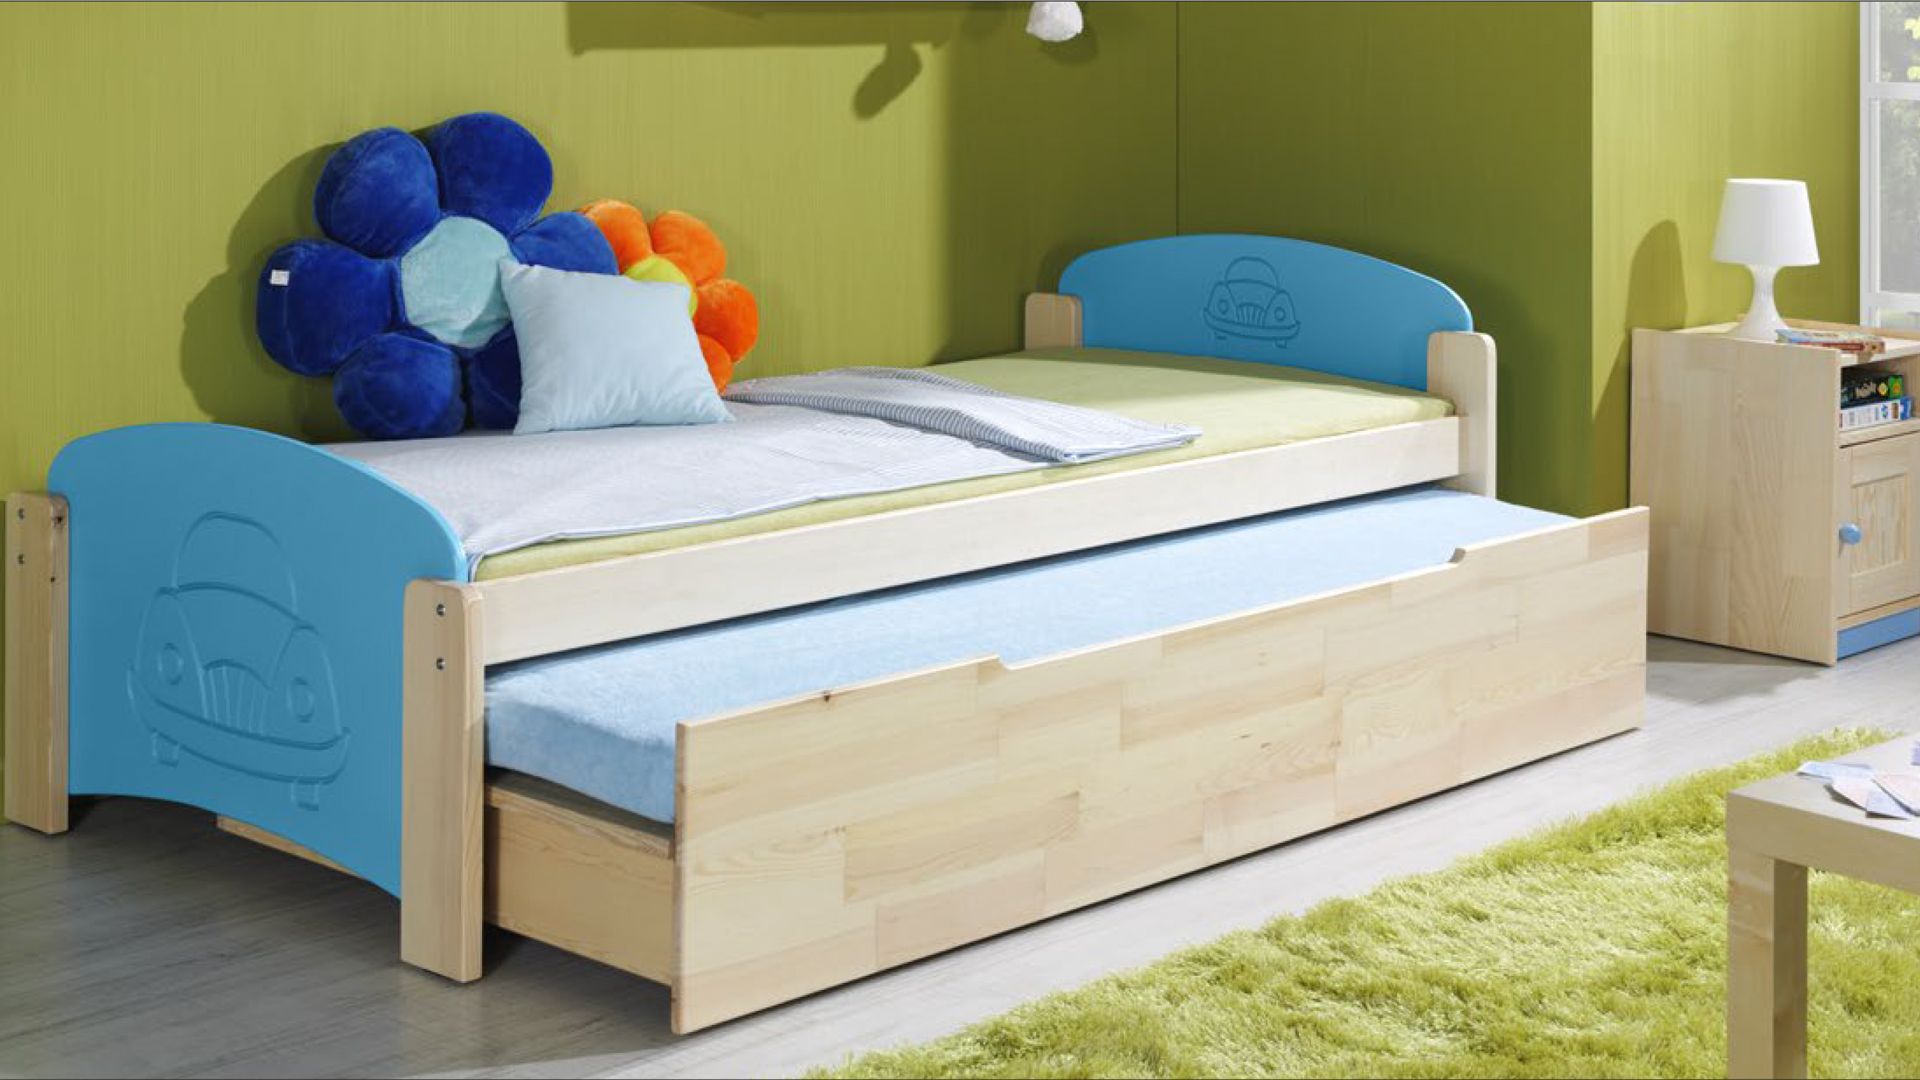 Кровать двойная выдвижная. Кровать с выдвижным спальным местом. Двойная кровать для детей. Кровать с выкатным спальным местом. Детская кровать с выдвижным спальным местом.